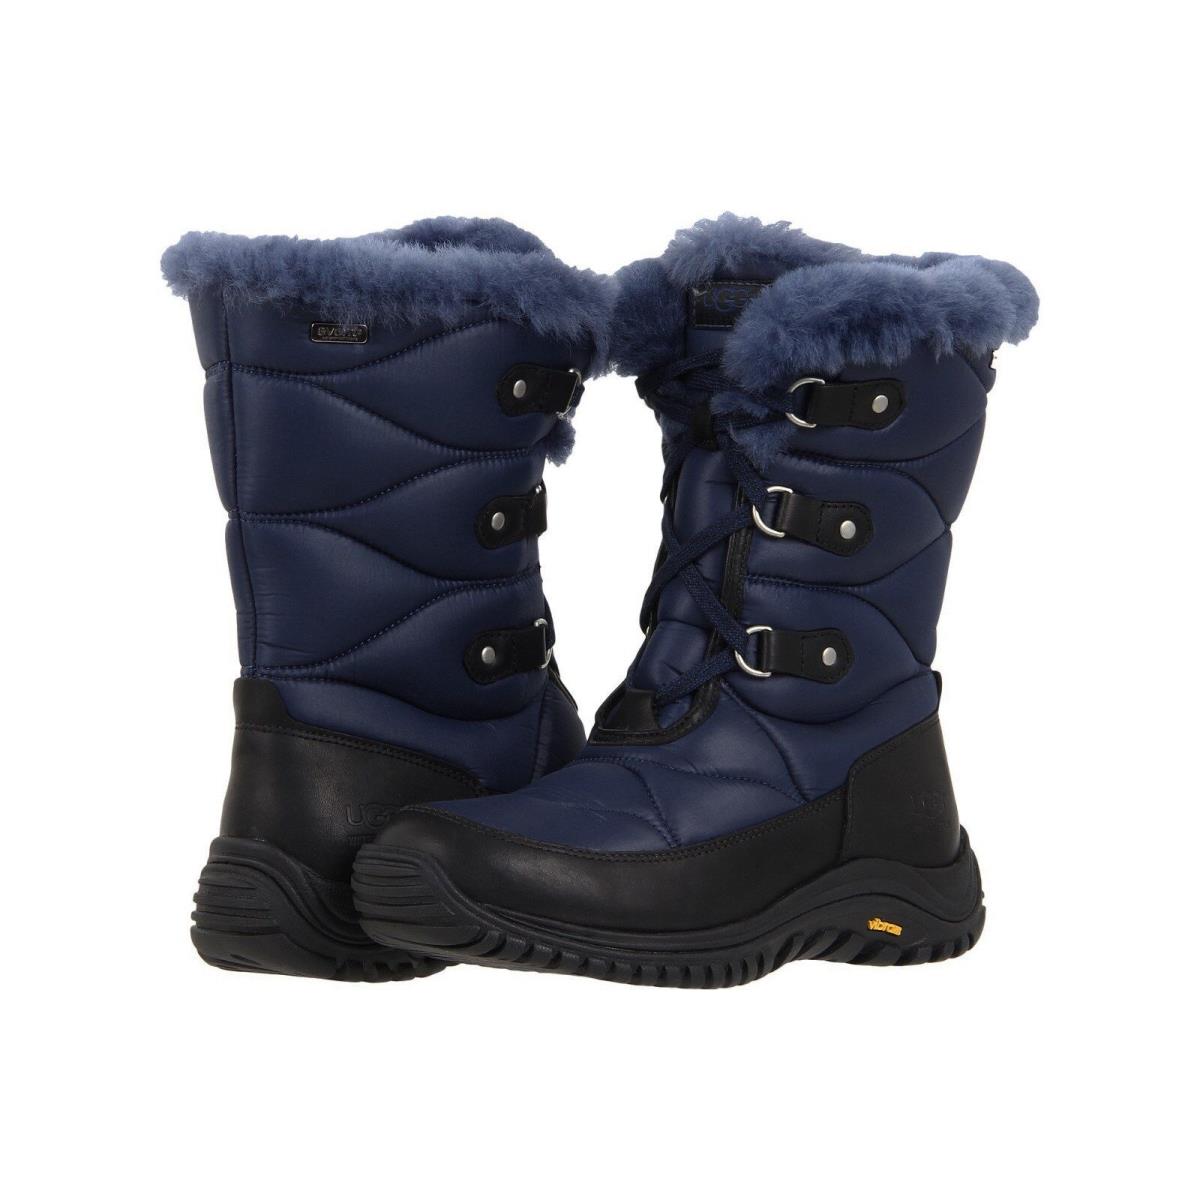 Ugg Australia Women Lorien Blue Sheepskin Leather Winter Snow Boots Shoes